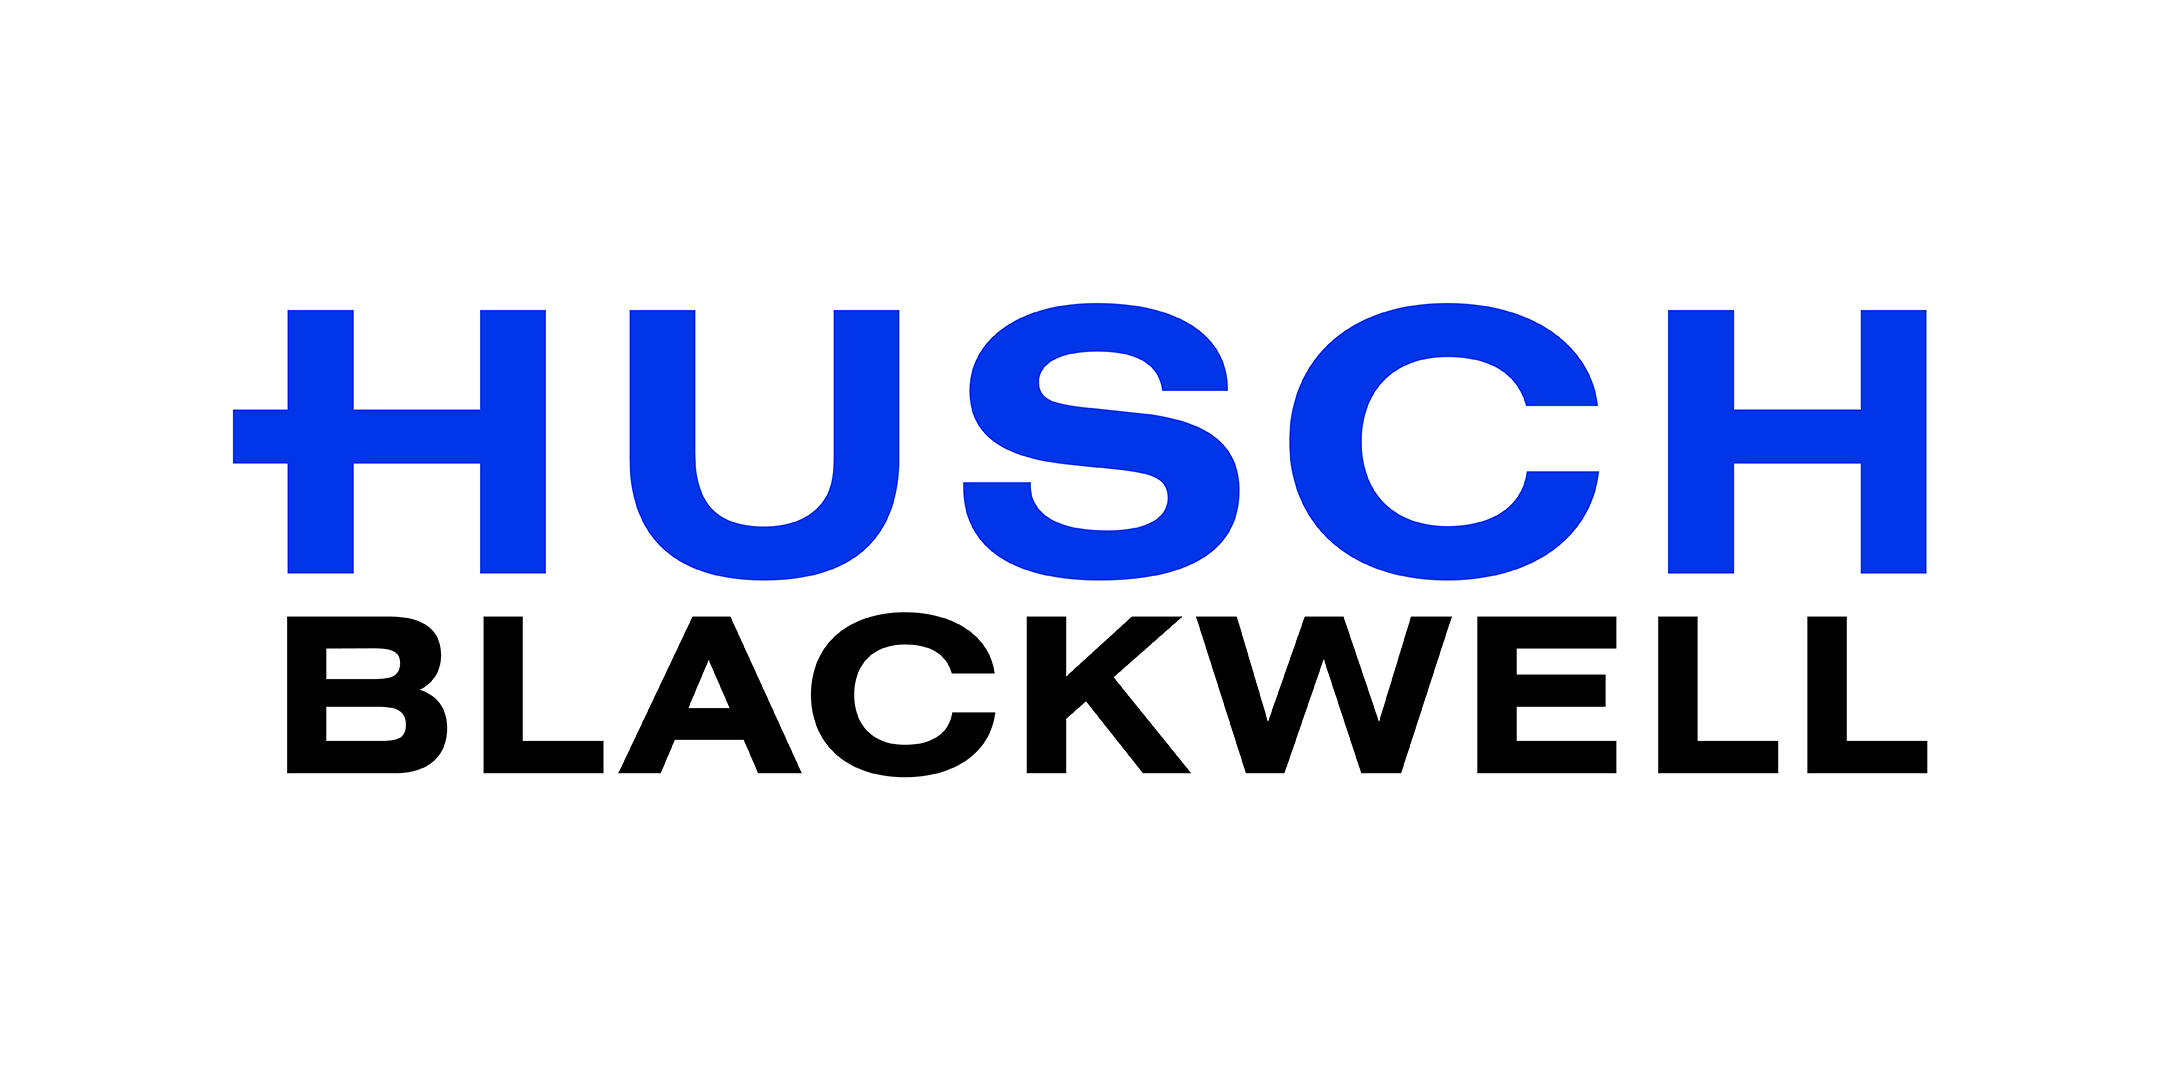 Husch Blackwell logo.jpg